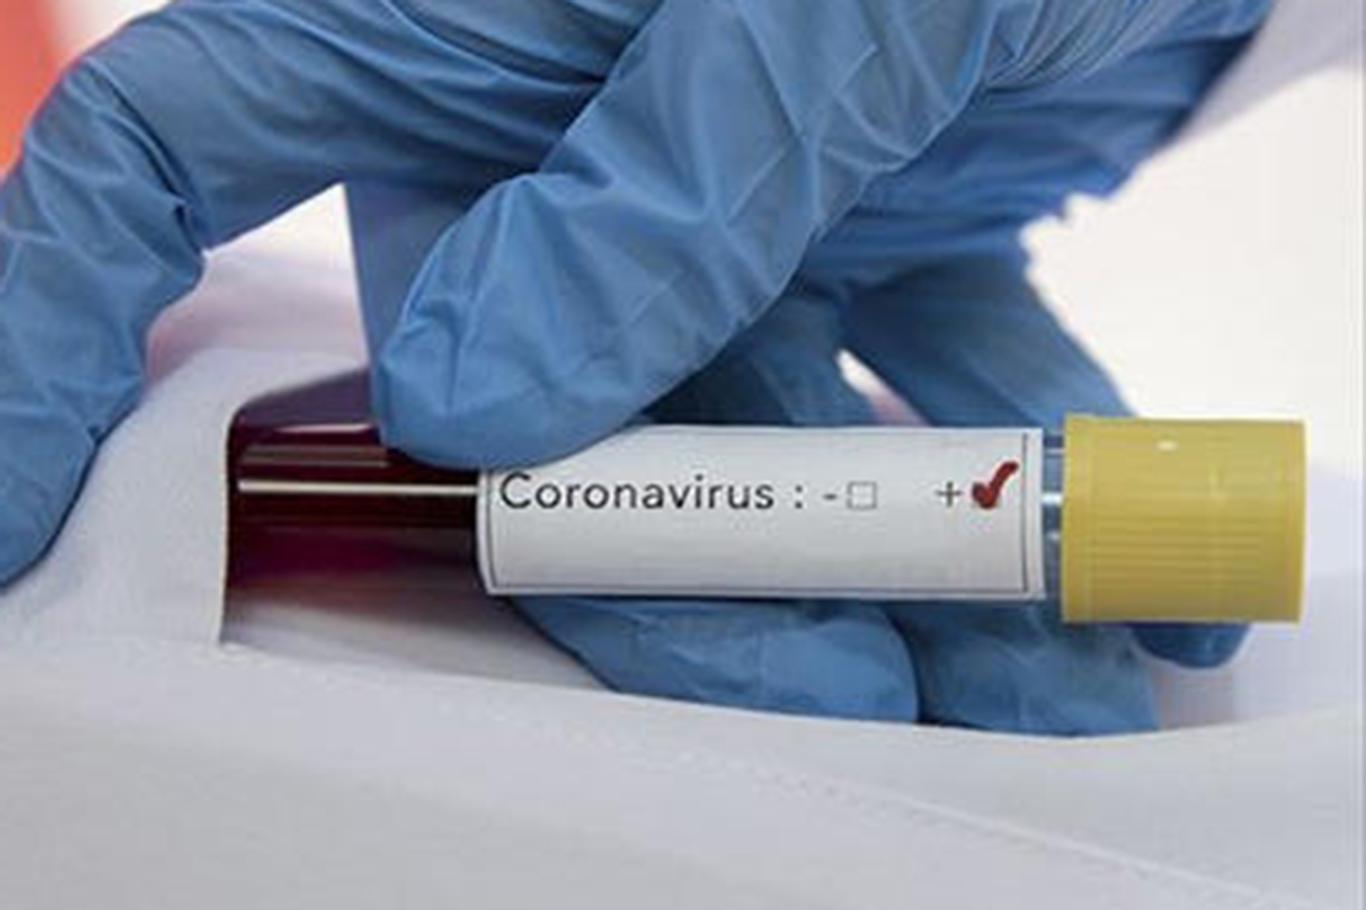  Almanya'da Coronavirus'ten ölenlerin sayısı 1048'e yükseldi